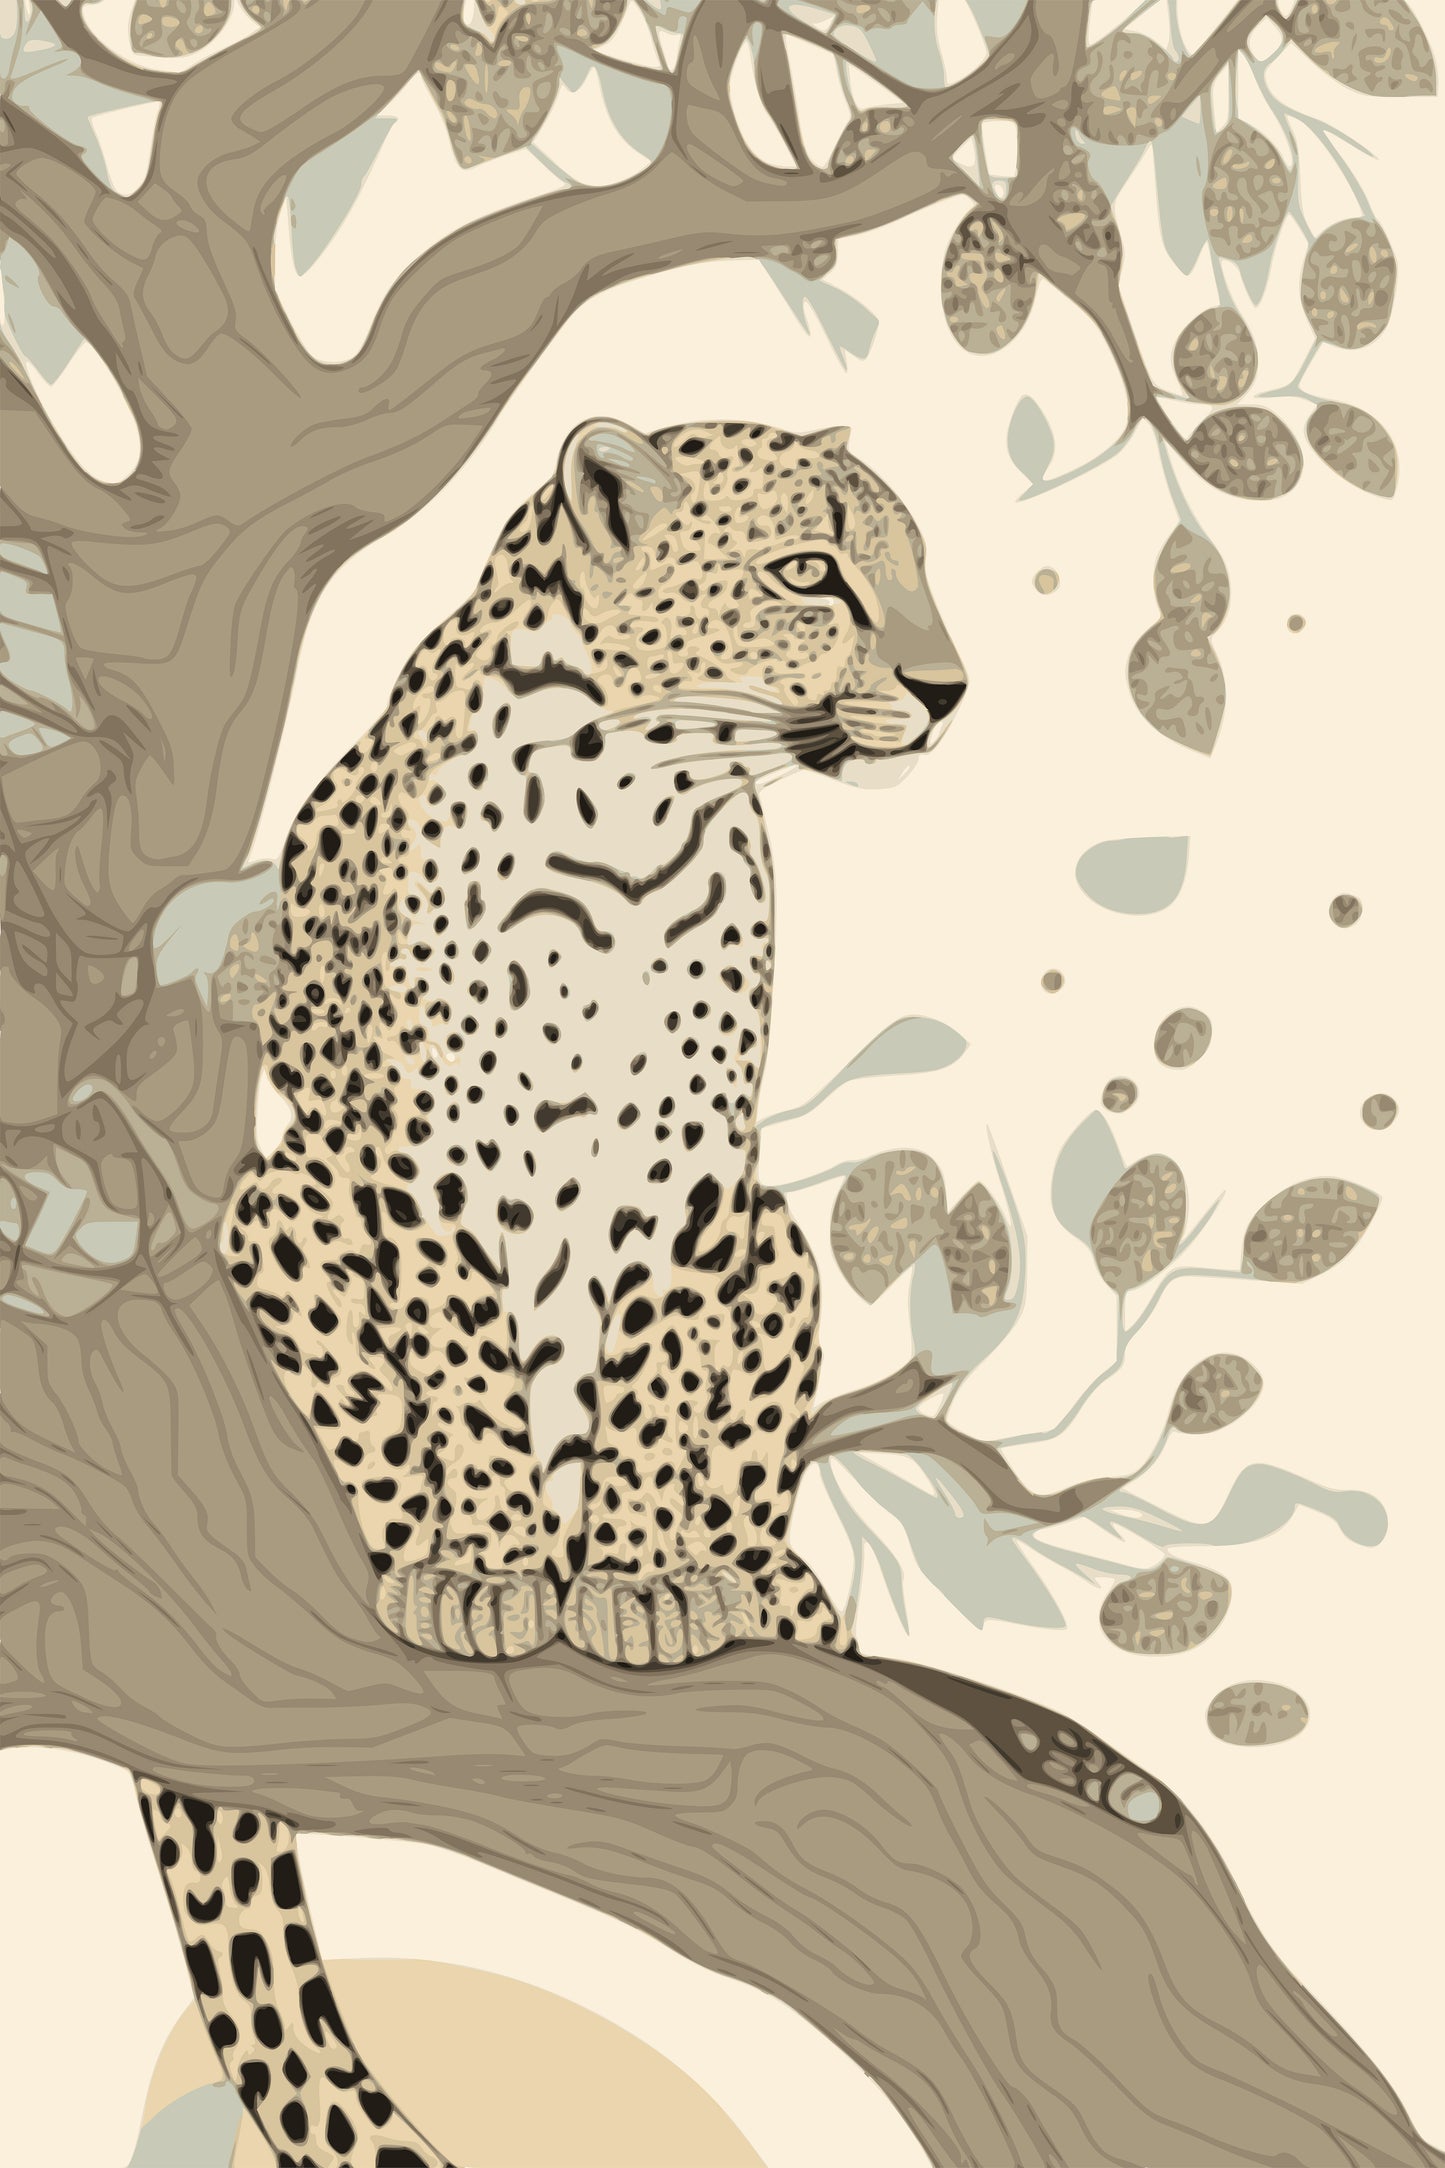 Leopard In A Tree